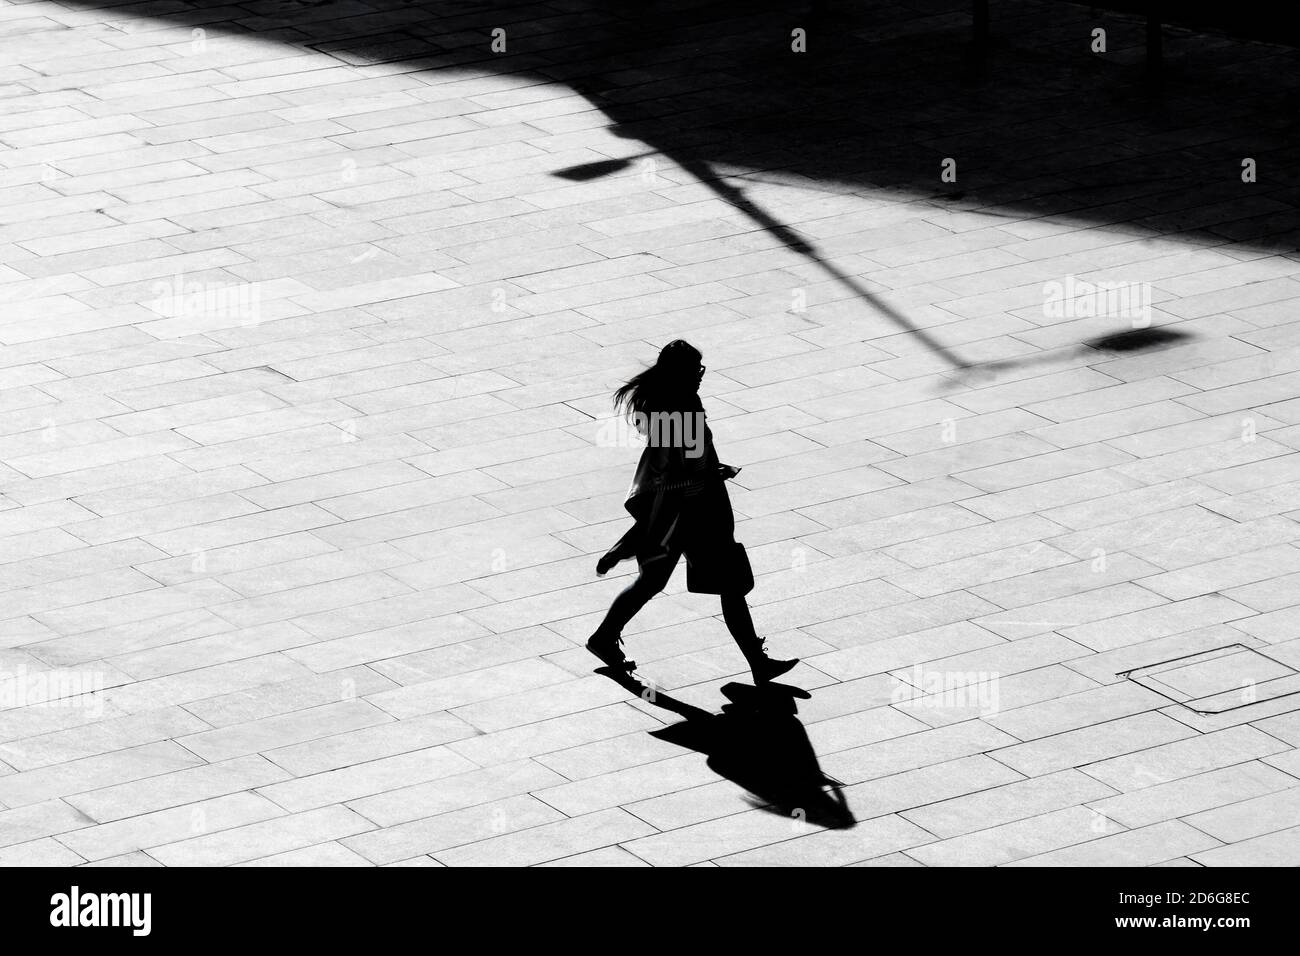 Belgrade, Serbie - 09 octobre 2020 : silhouette d'ombre d'une jeune femme marchant sur la chaussée carrée de la ville, en vue à grand angle noir et blanc Banque D'Images